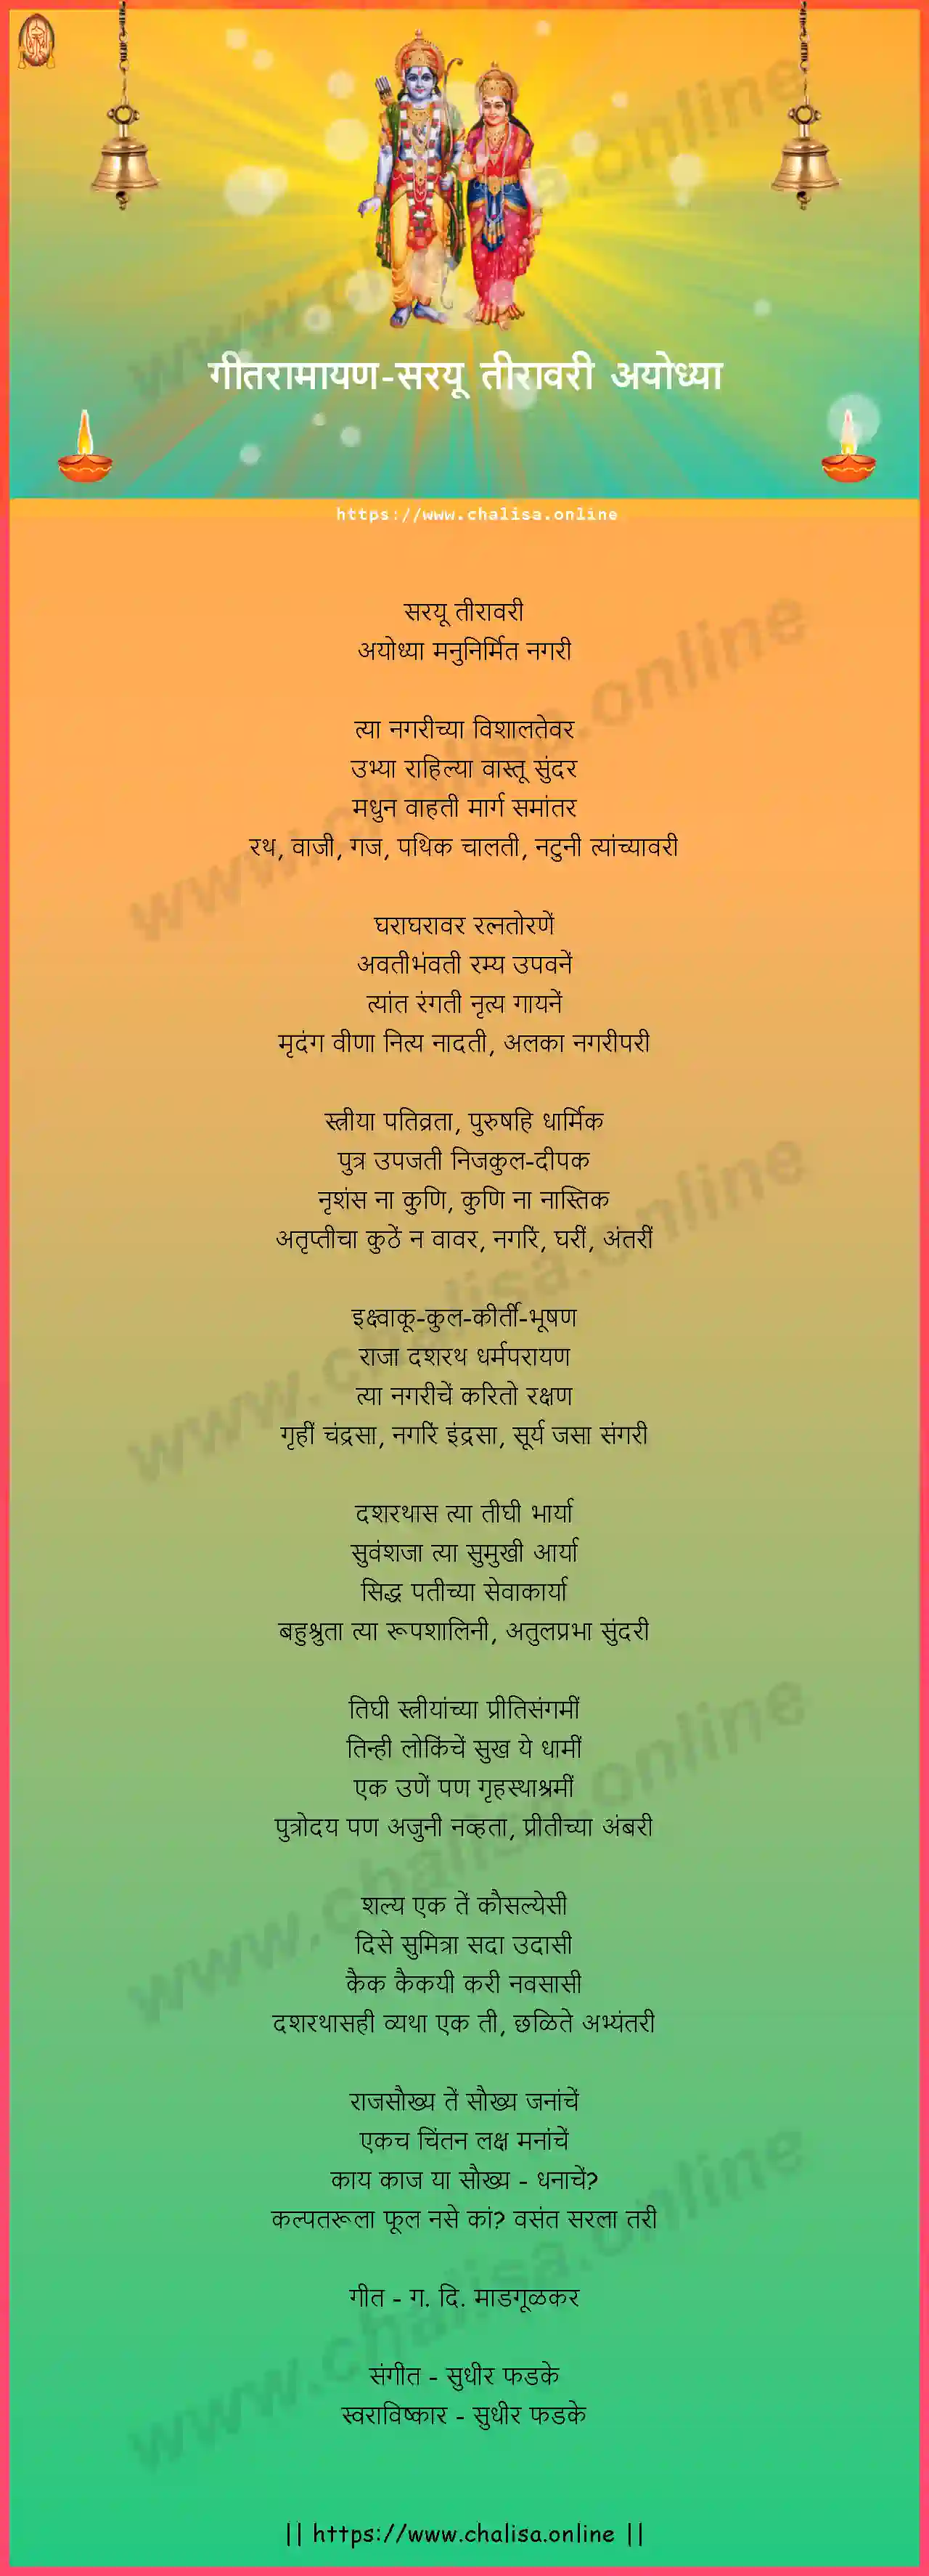 sarayu-tiravari-ayodhya-geet-ramayan-marathi-lyrics-download